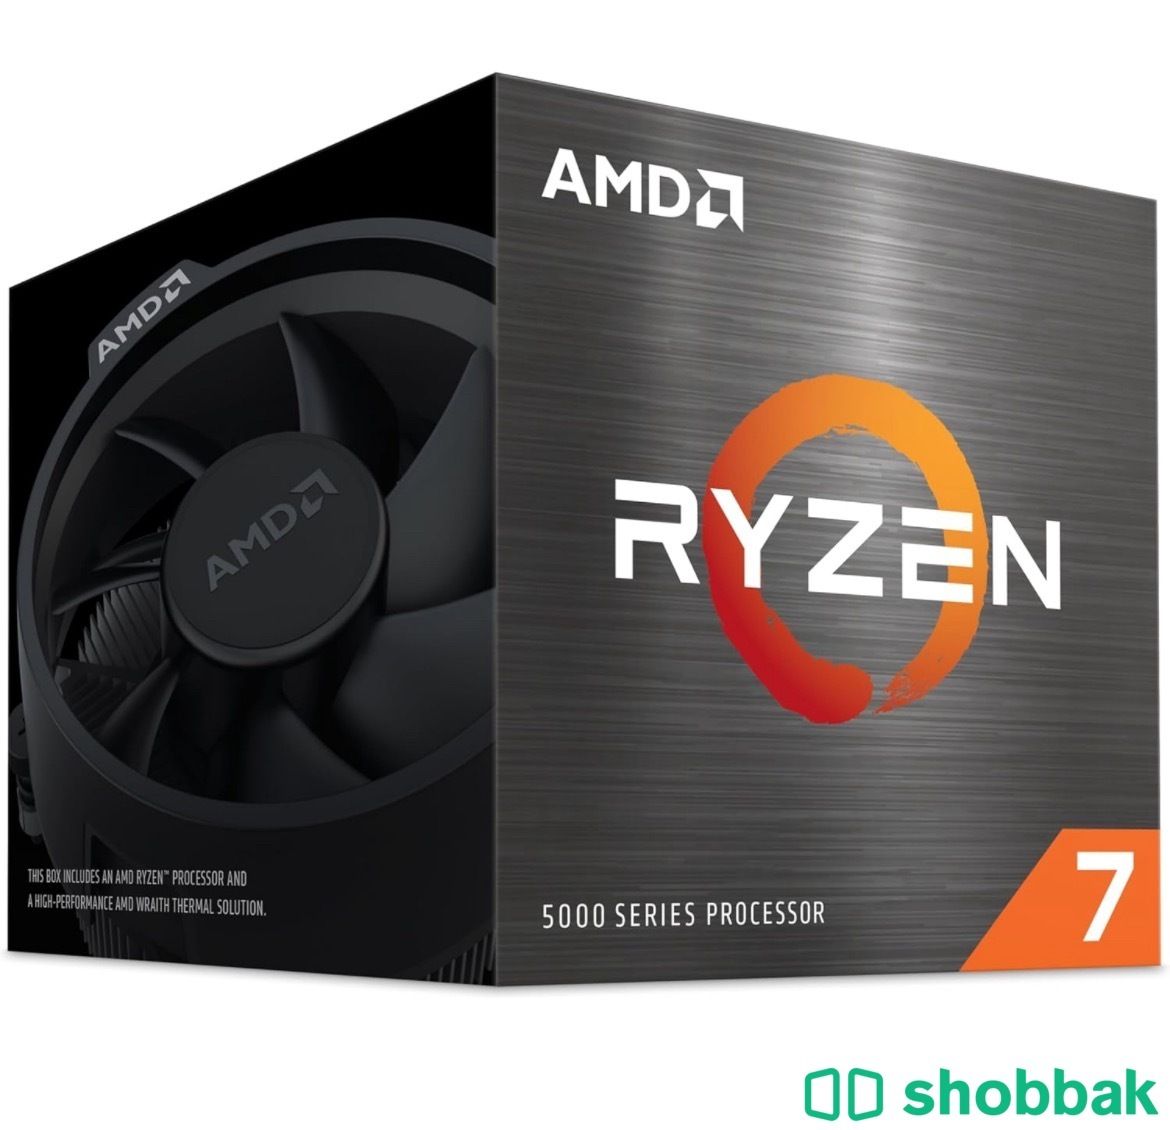 AMD Ryzen 7 5700 8-Core 16-Thread Desktop Processor  Shobbak Saudi Arabia